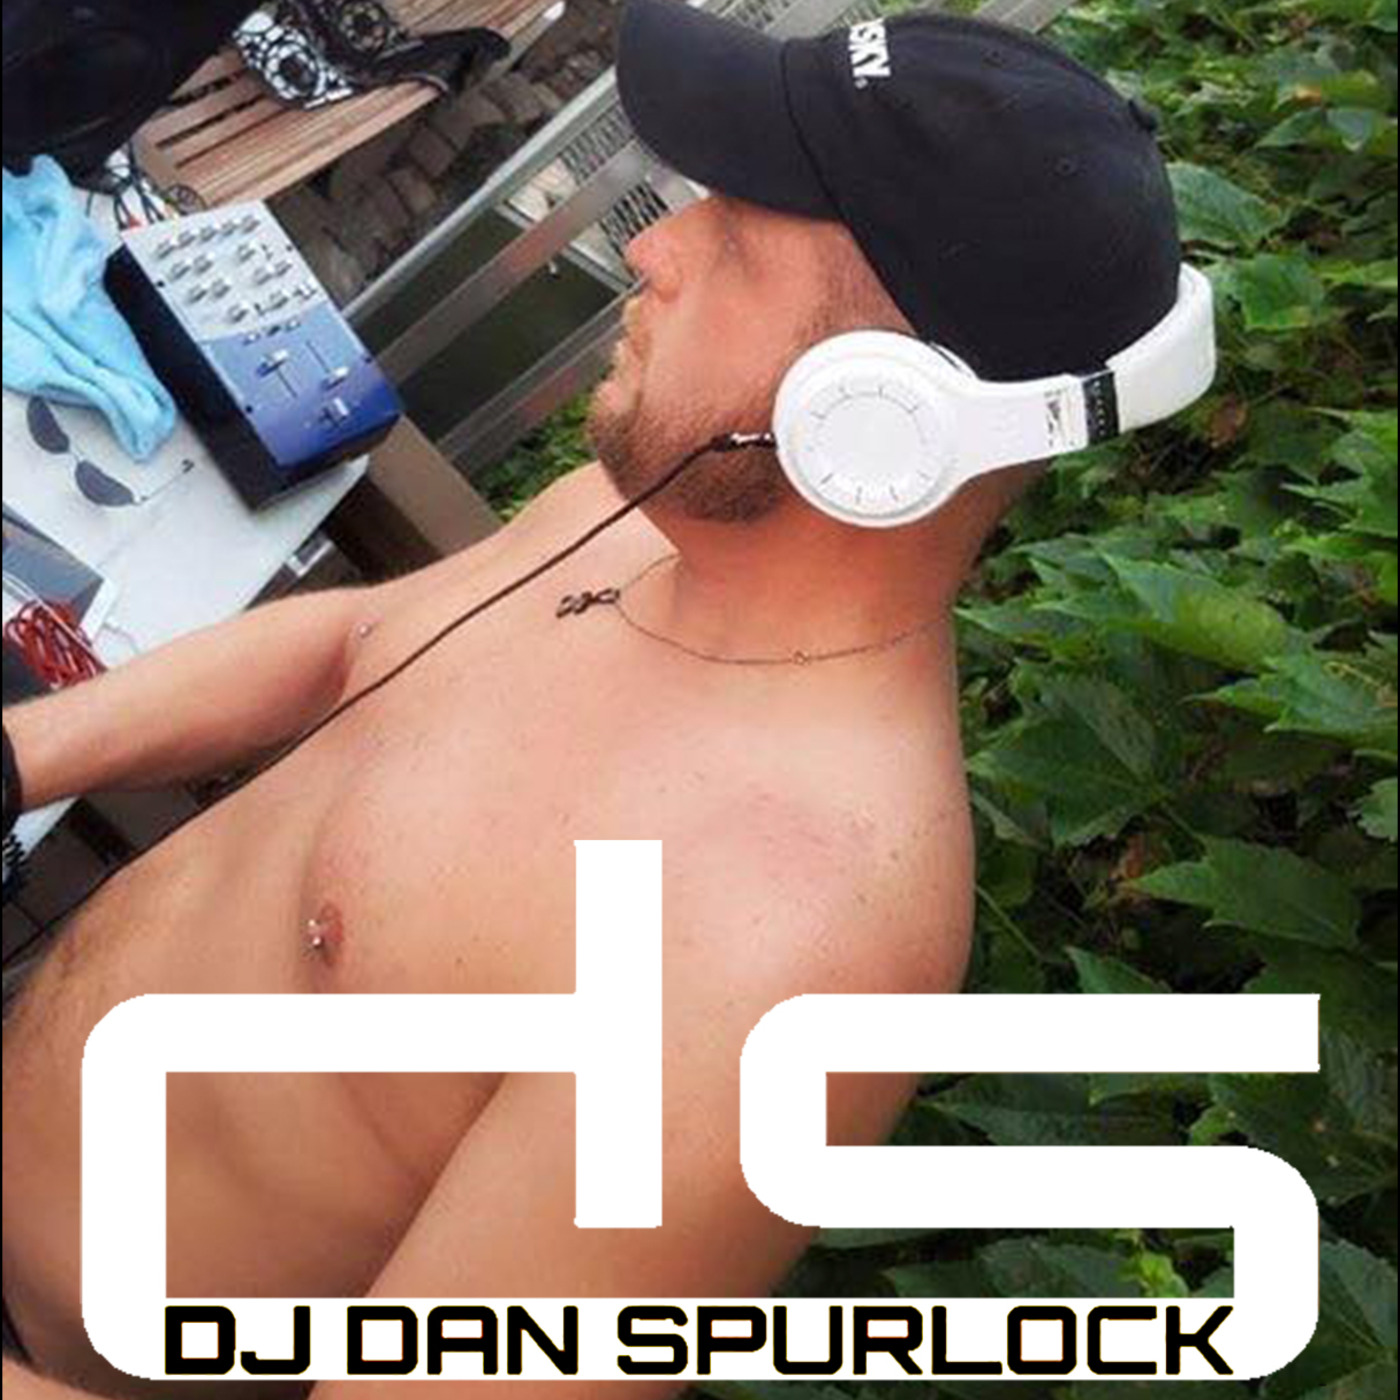 DJ Dan Spurlock